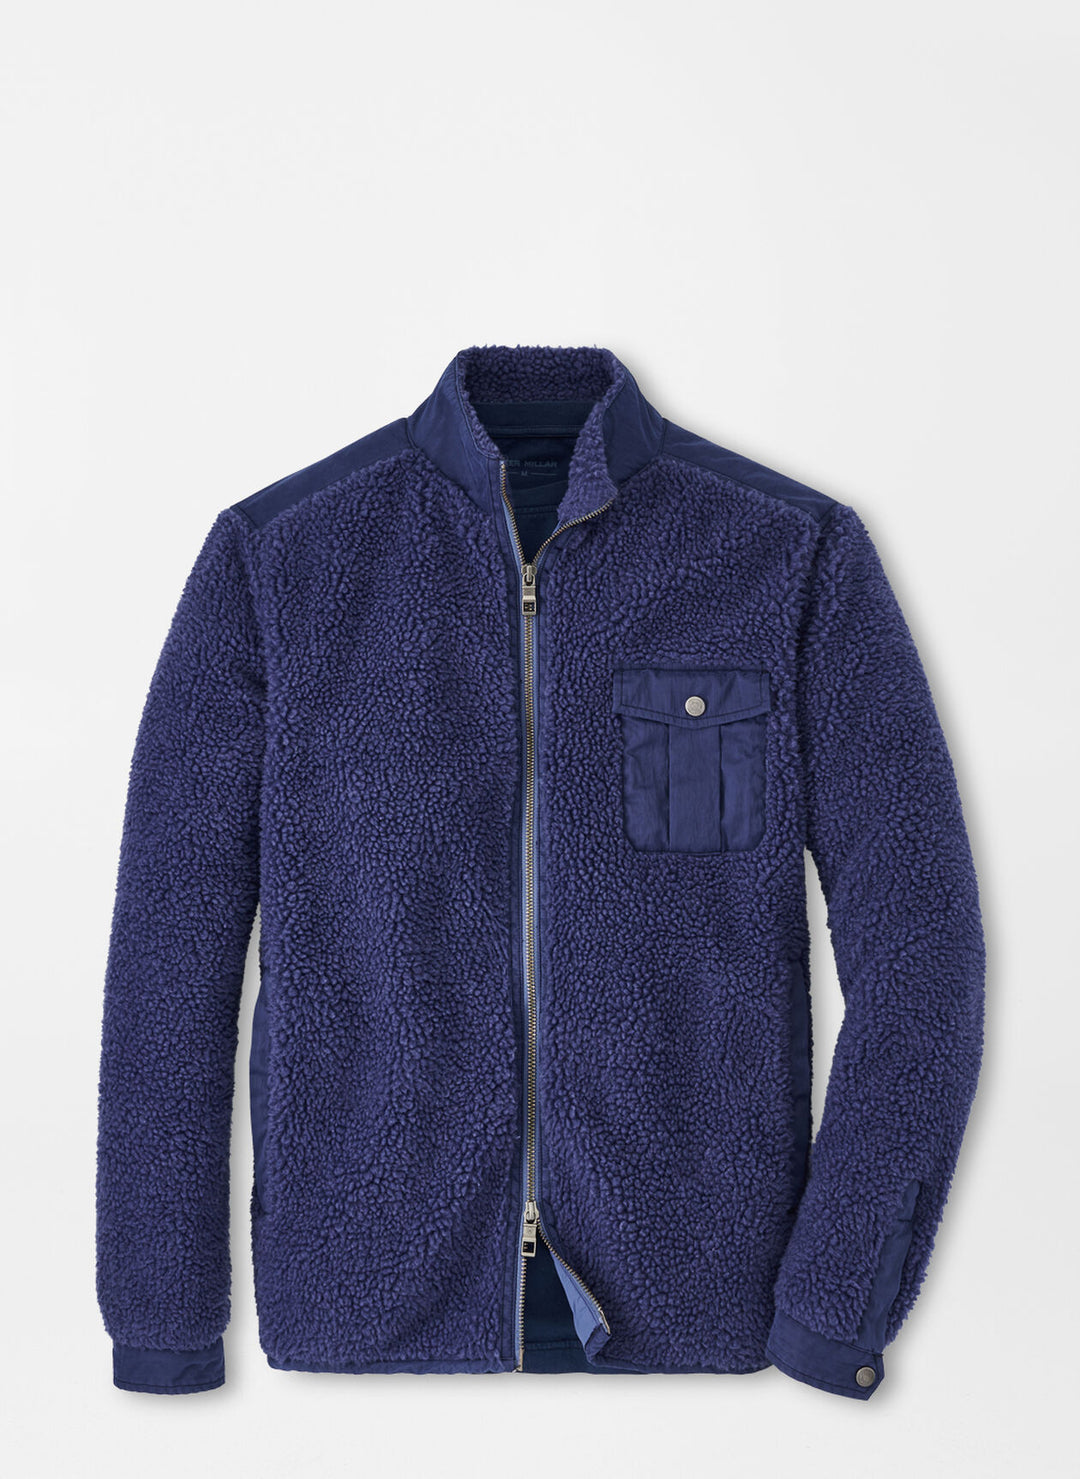 Peter Millar Yorkshire Wool Shirt Jacket